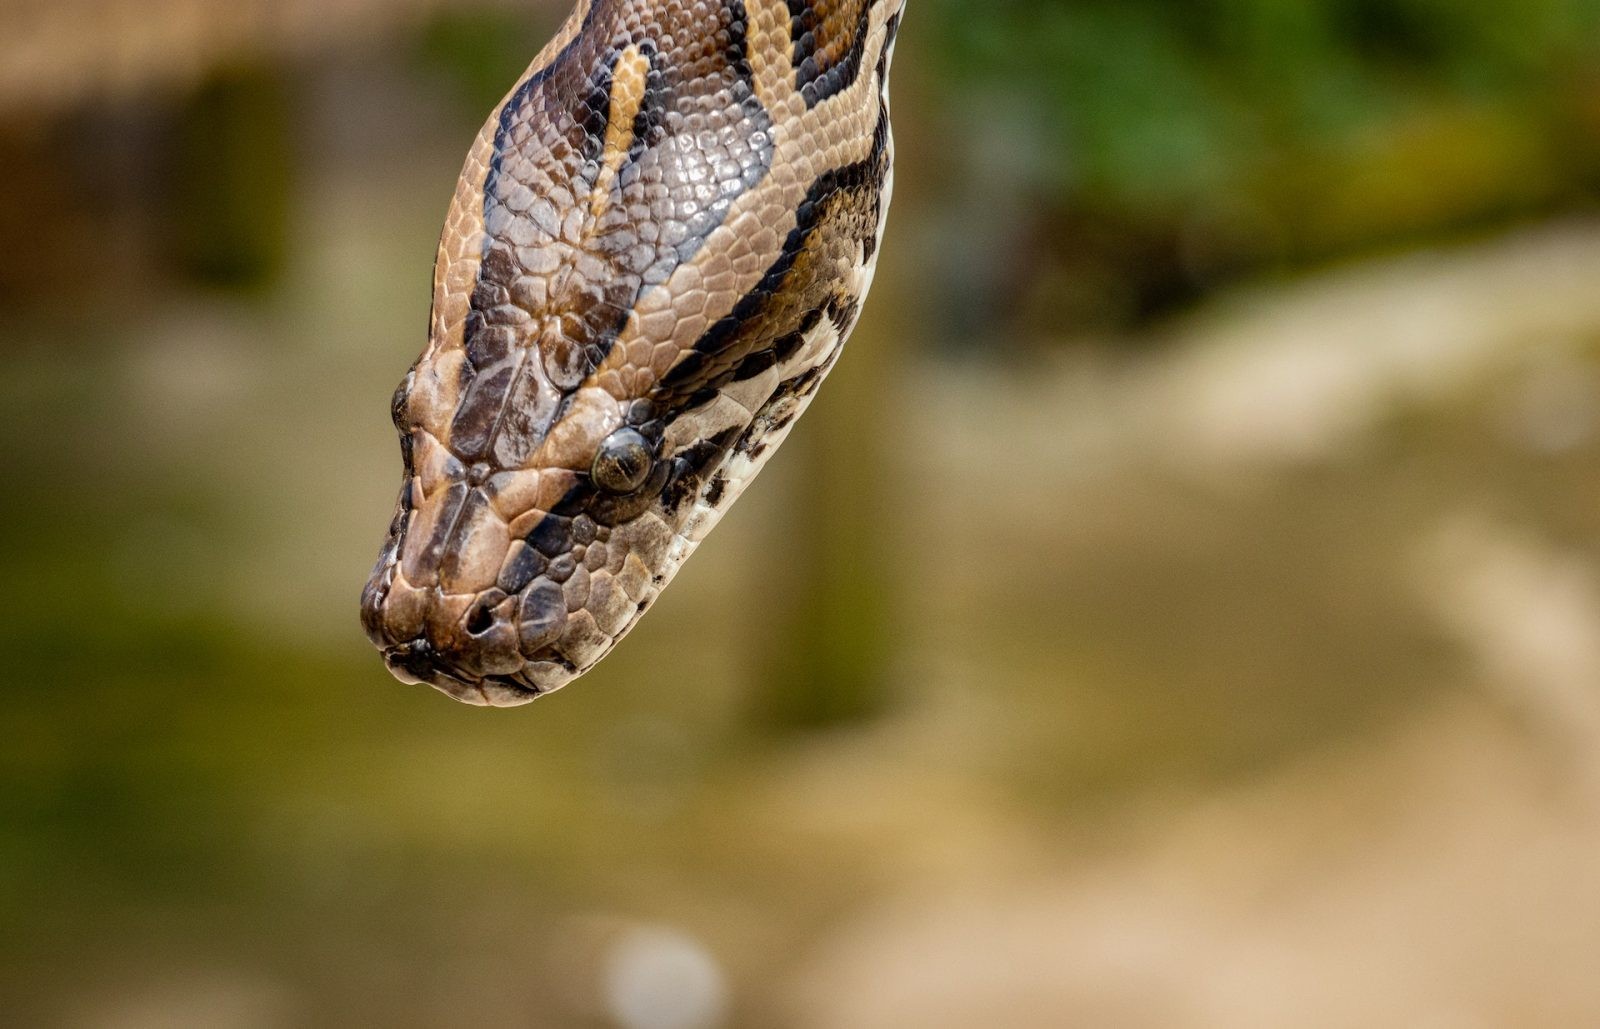 Pyton siatkowy to najdłuższy wąż na świecie /Fot. Pexels
